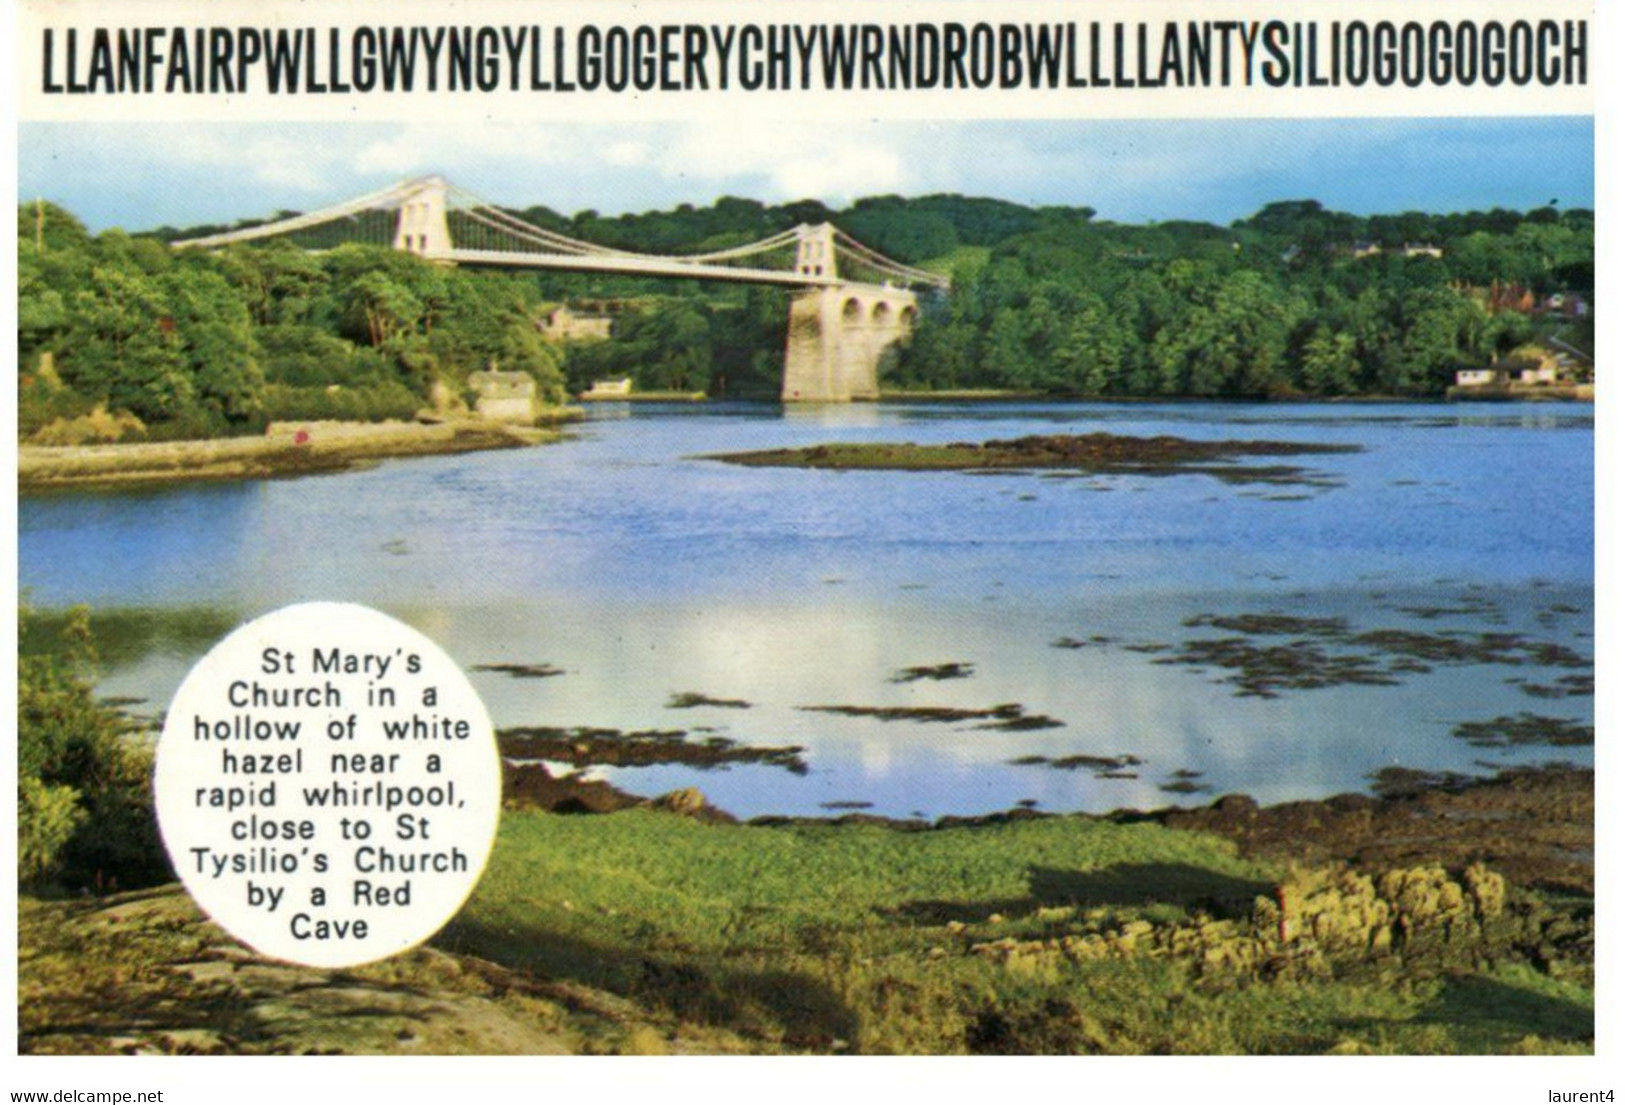 (AA 20)  UK - Wales - Llanfair­pwllgwyngyll­gogery­chwyrn­drobwll­llan­tysilio­gogo­goch - Anglesey